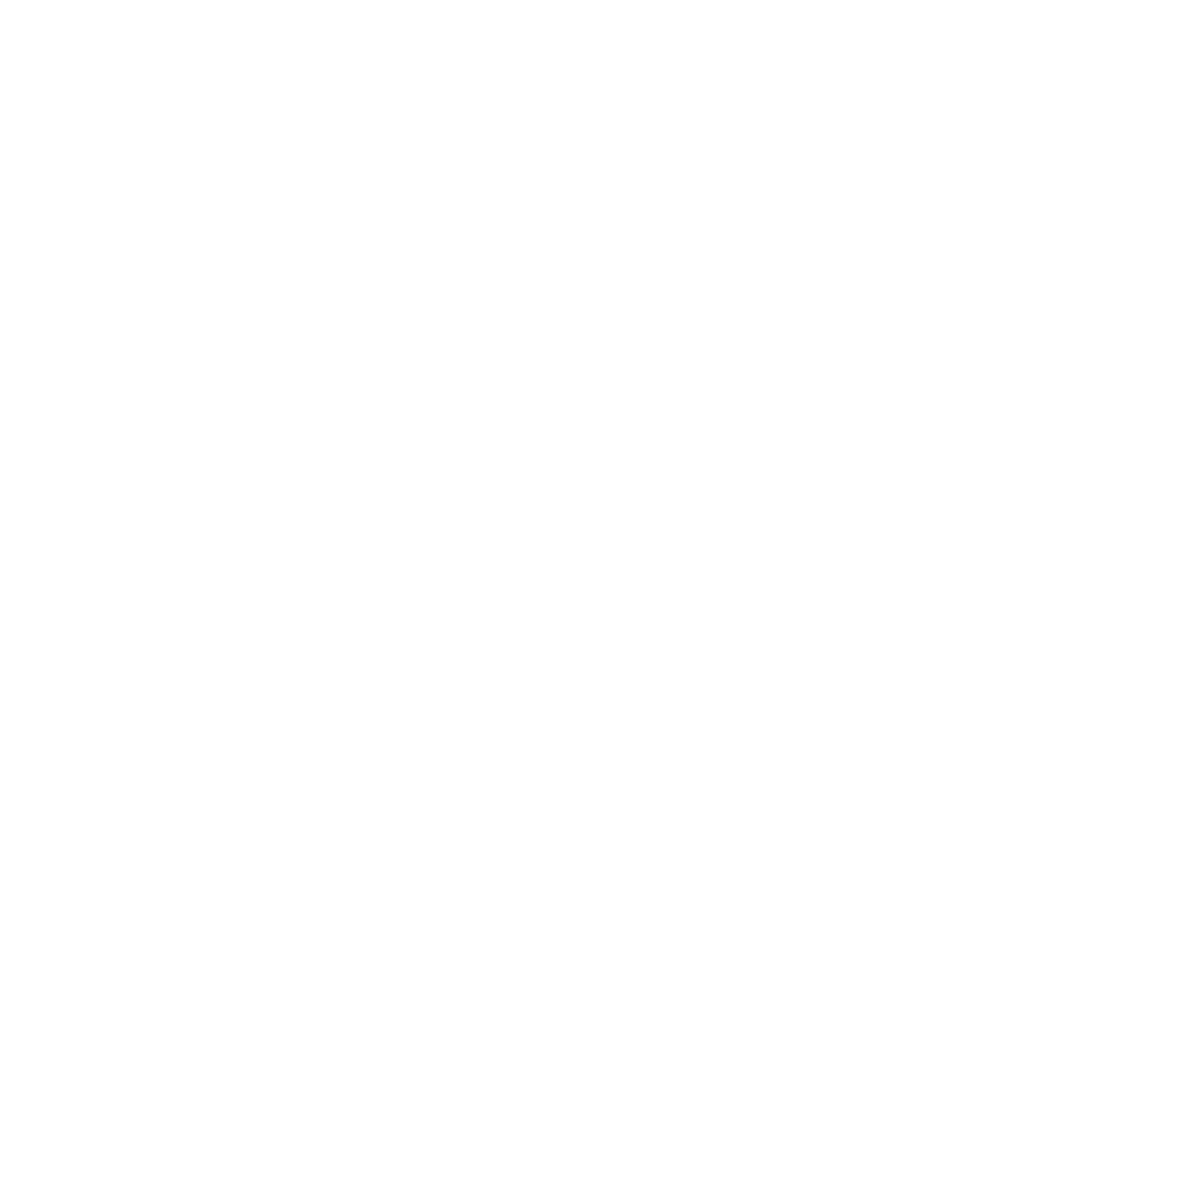 Alnaelvas Venner